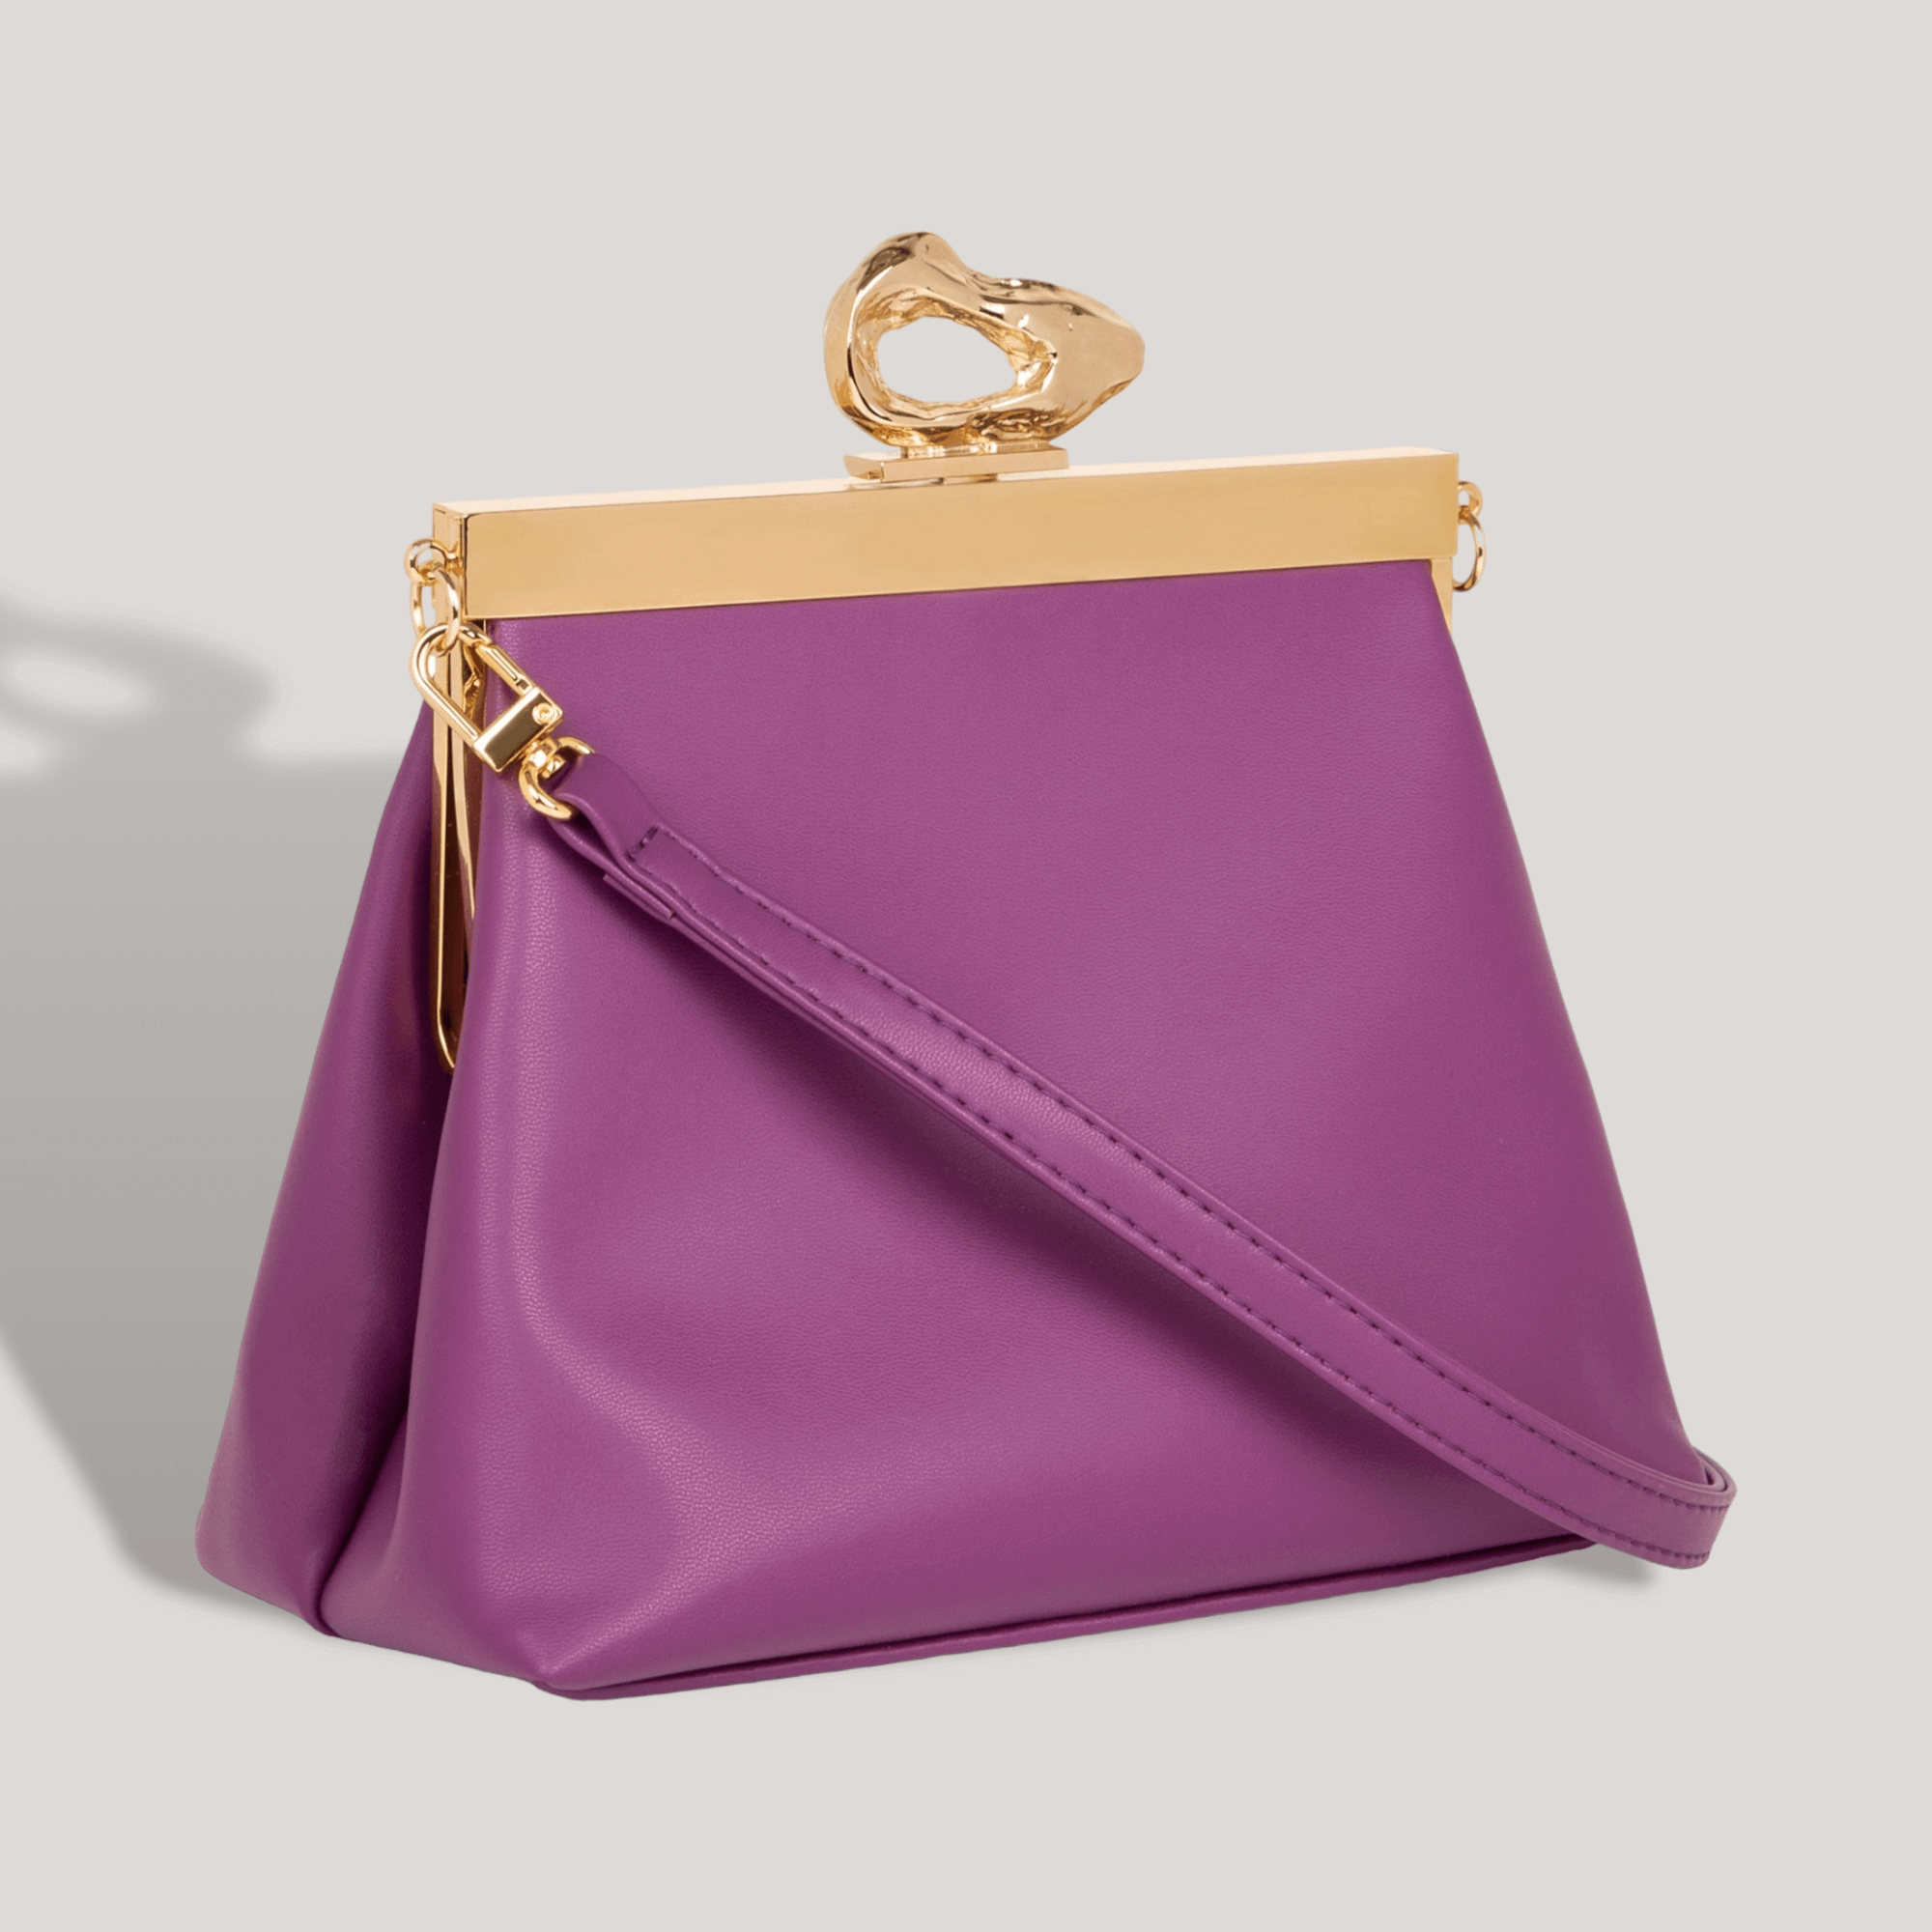 Dooney & Bourke purple bag | Bags, Purses and handbags, Dooney bourke